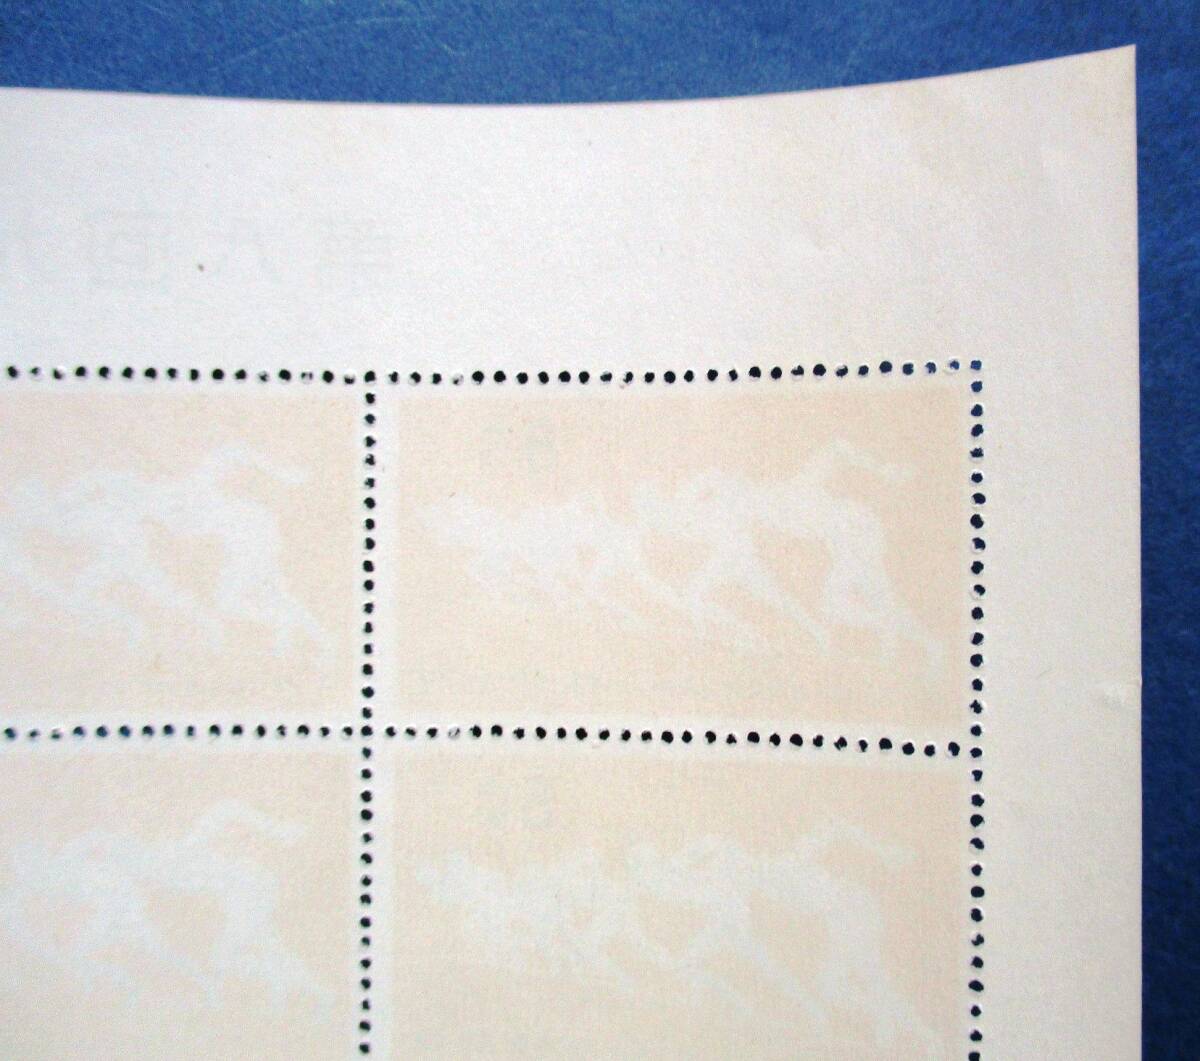 沖縄切手・琉球切手 希少品 第8回九州各県対抗陸上競技大会記念 8￠切手 20面シート R20 切手シートミミ角にヨレがあります。画像参照の画像8